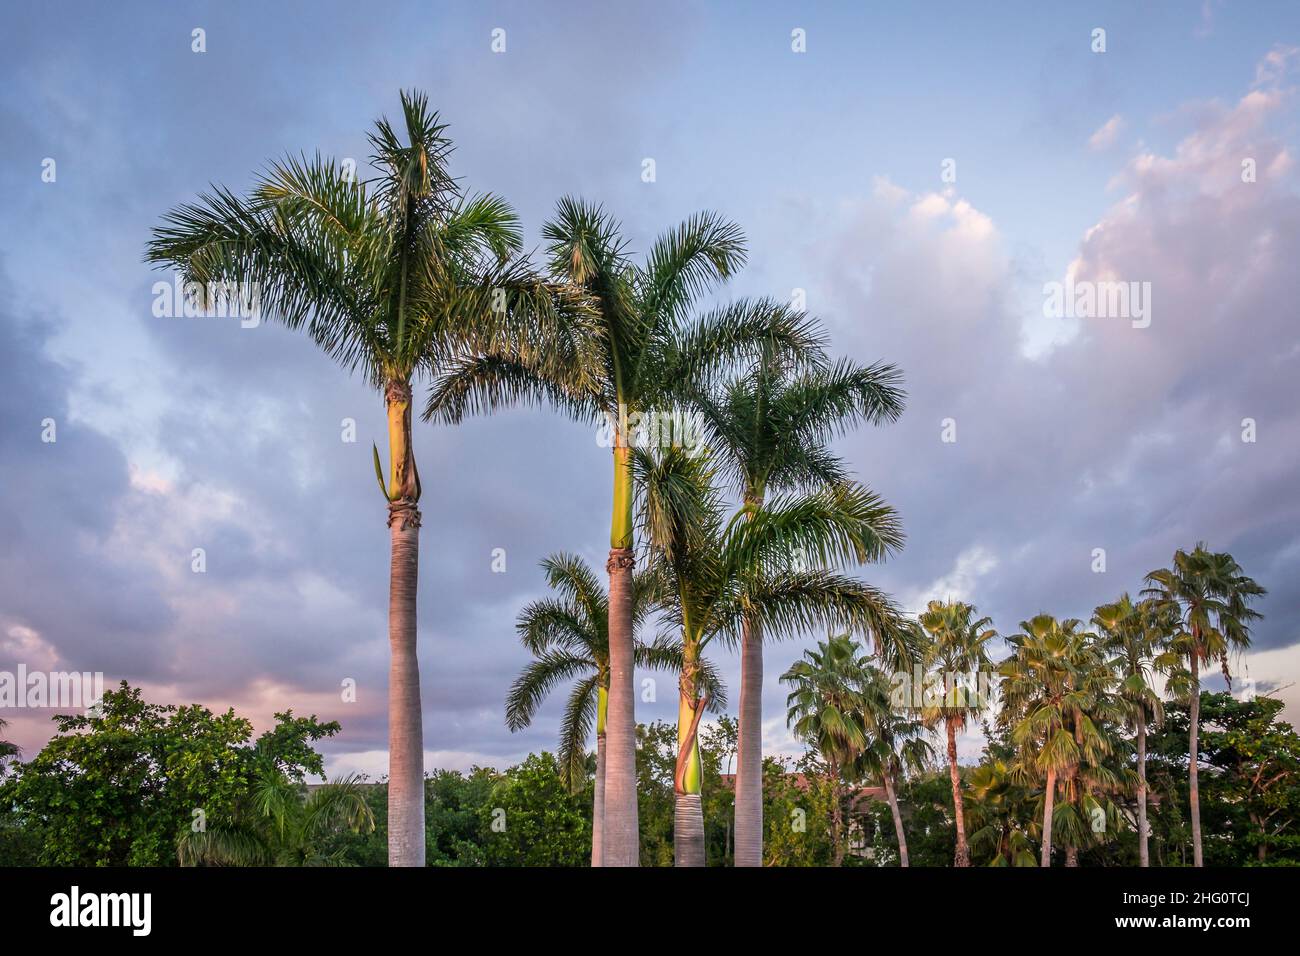 Le palmier se trouve sur un parcours de golf redondant au coucher du soleil, Grand Cayman, îles Caïman Banque D'Images